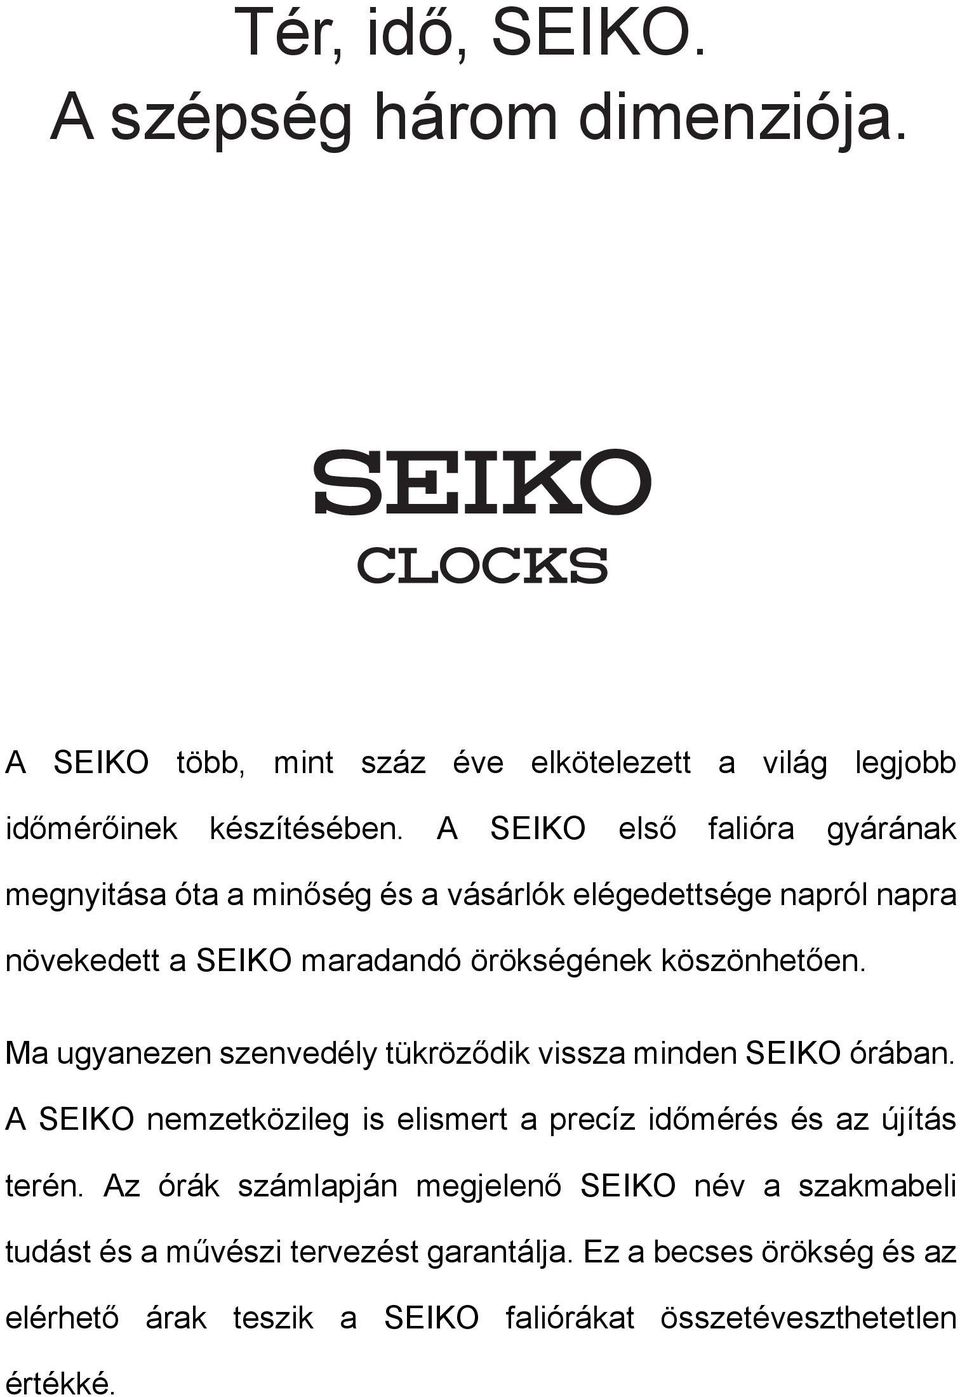 Ma ugyanezen szenvedély tükröződik vissza minden SEIKO órában. A SEIKO nemzetközileg is elismert a precíz időmérés és az újítás terén.